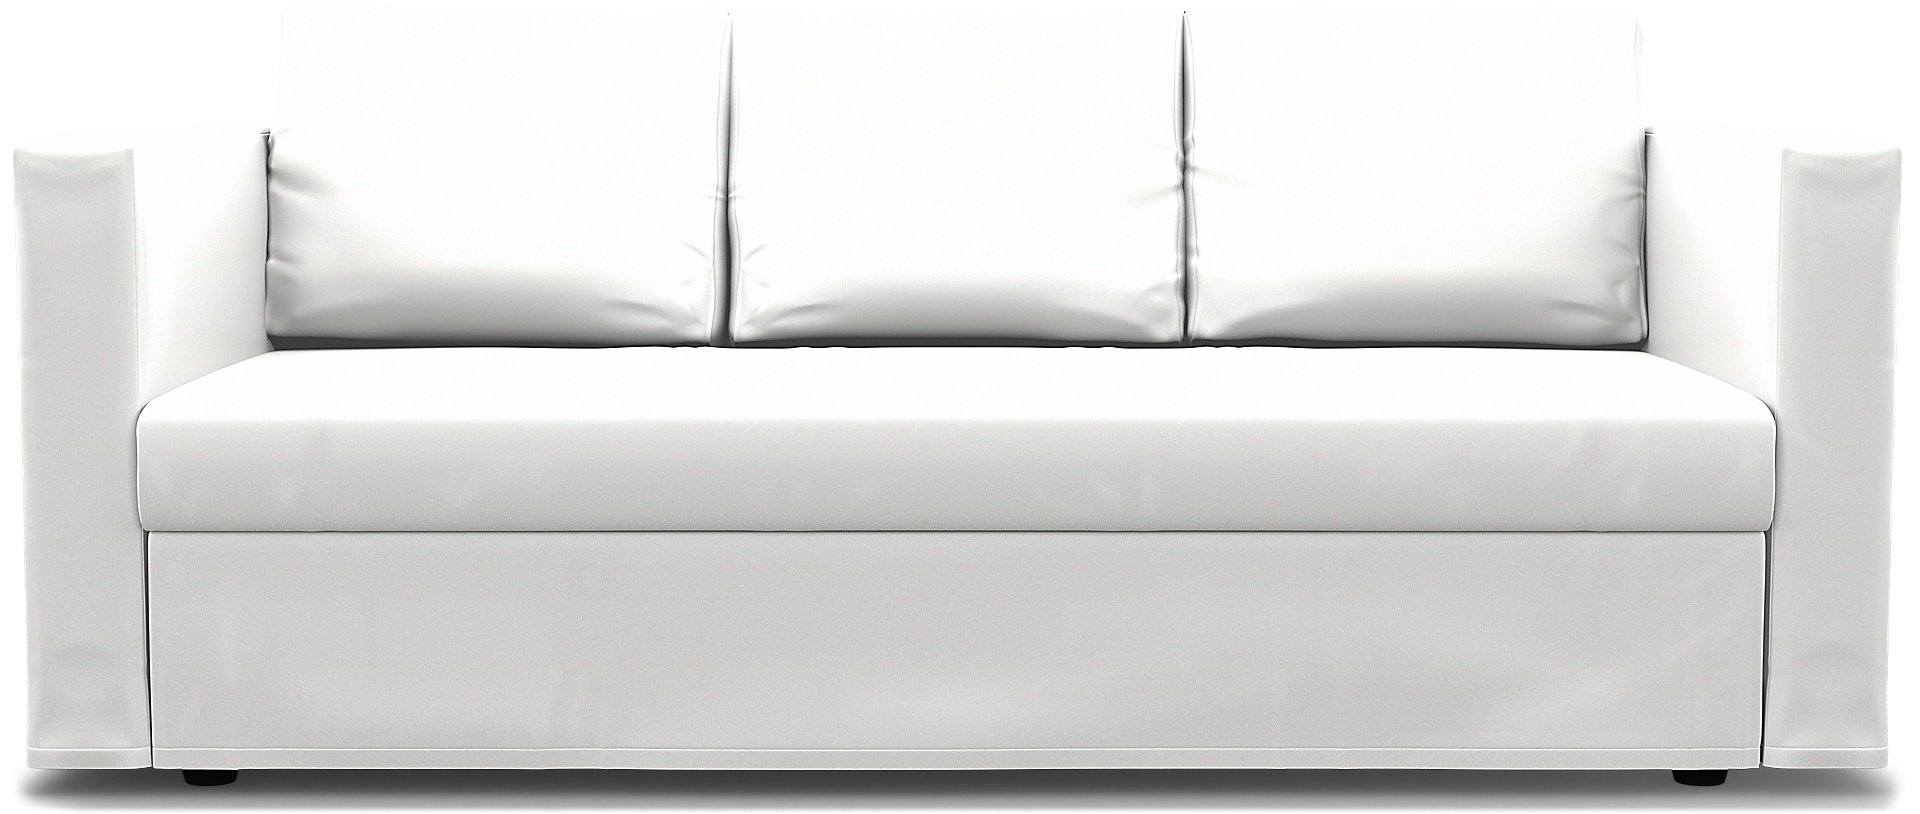 IKEA - Friheten 3 Seater Sofa Bed Cover, Absolute White, Linen - Bemz